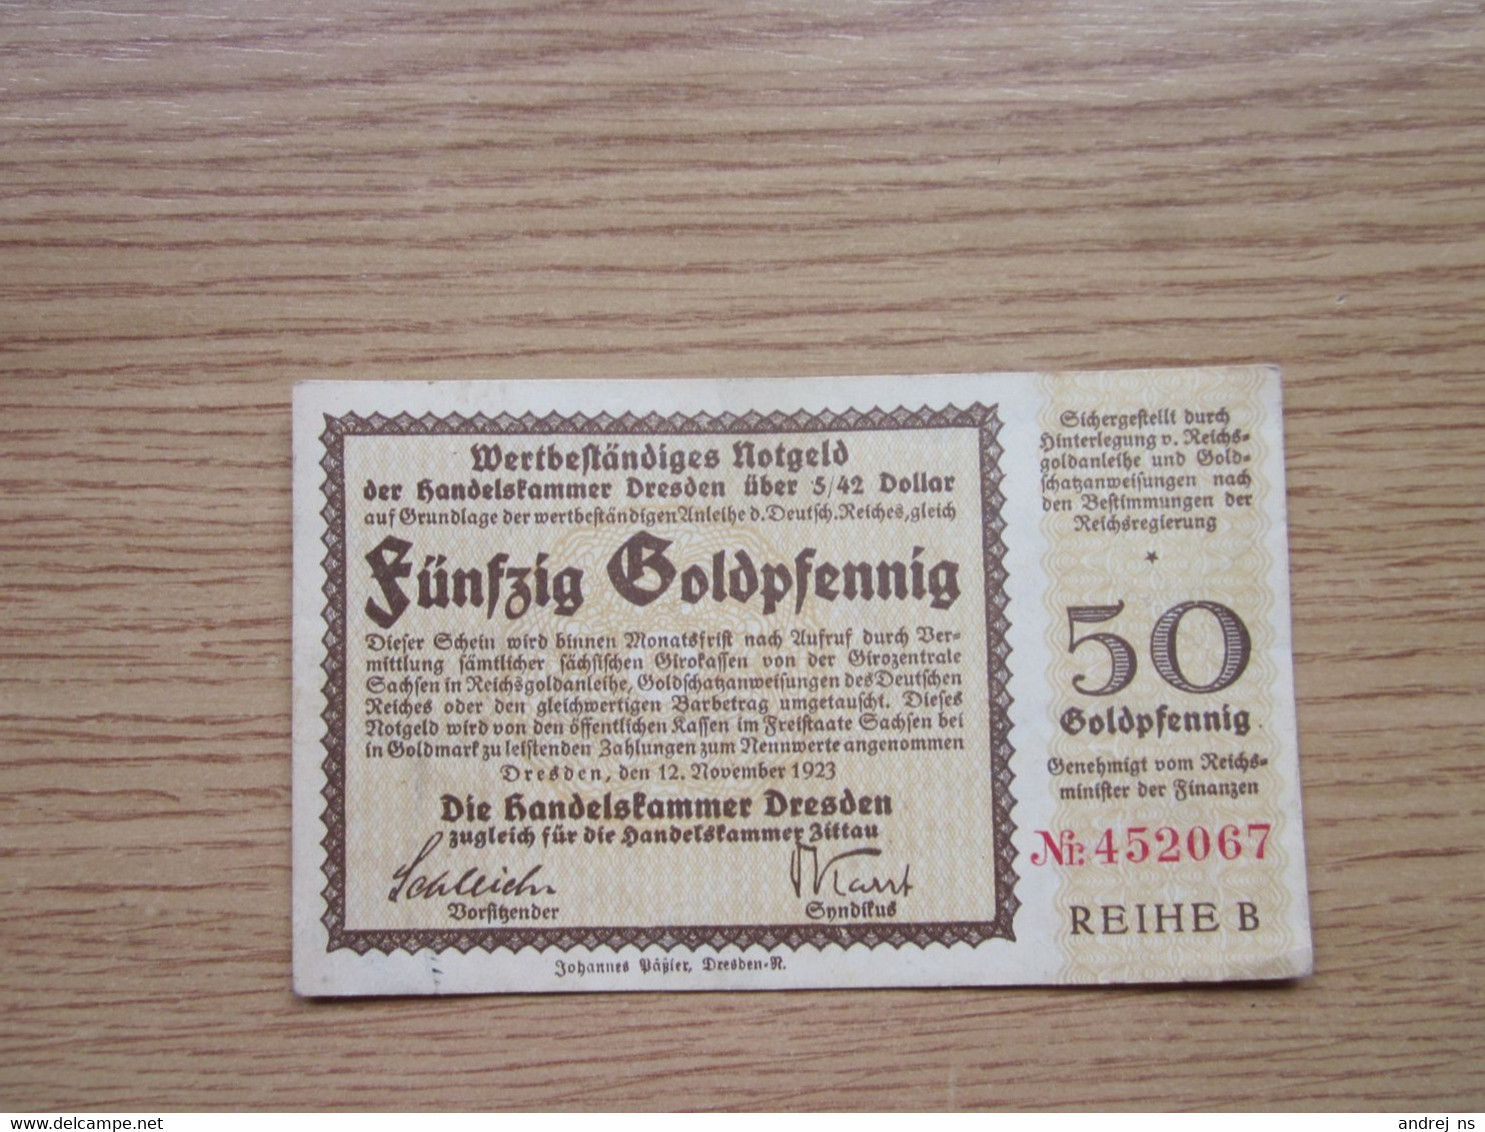 Funfzig Goldpfenning Dresden 1923 50 - Deutsche Golddiskontbank